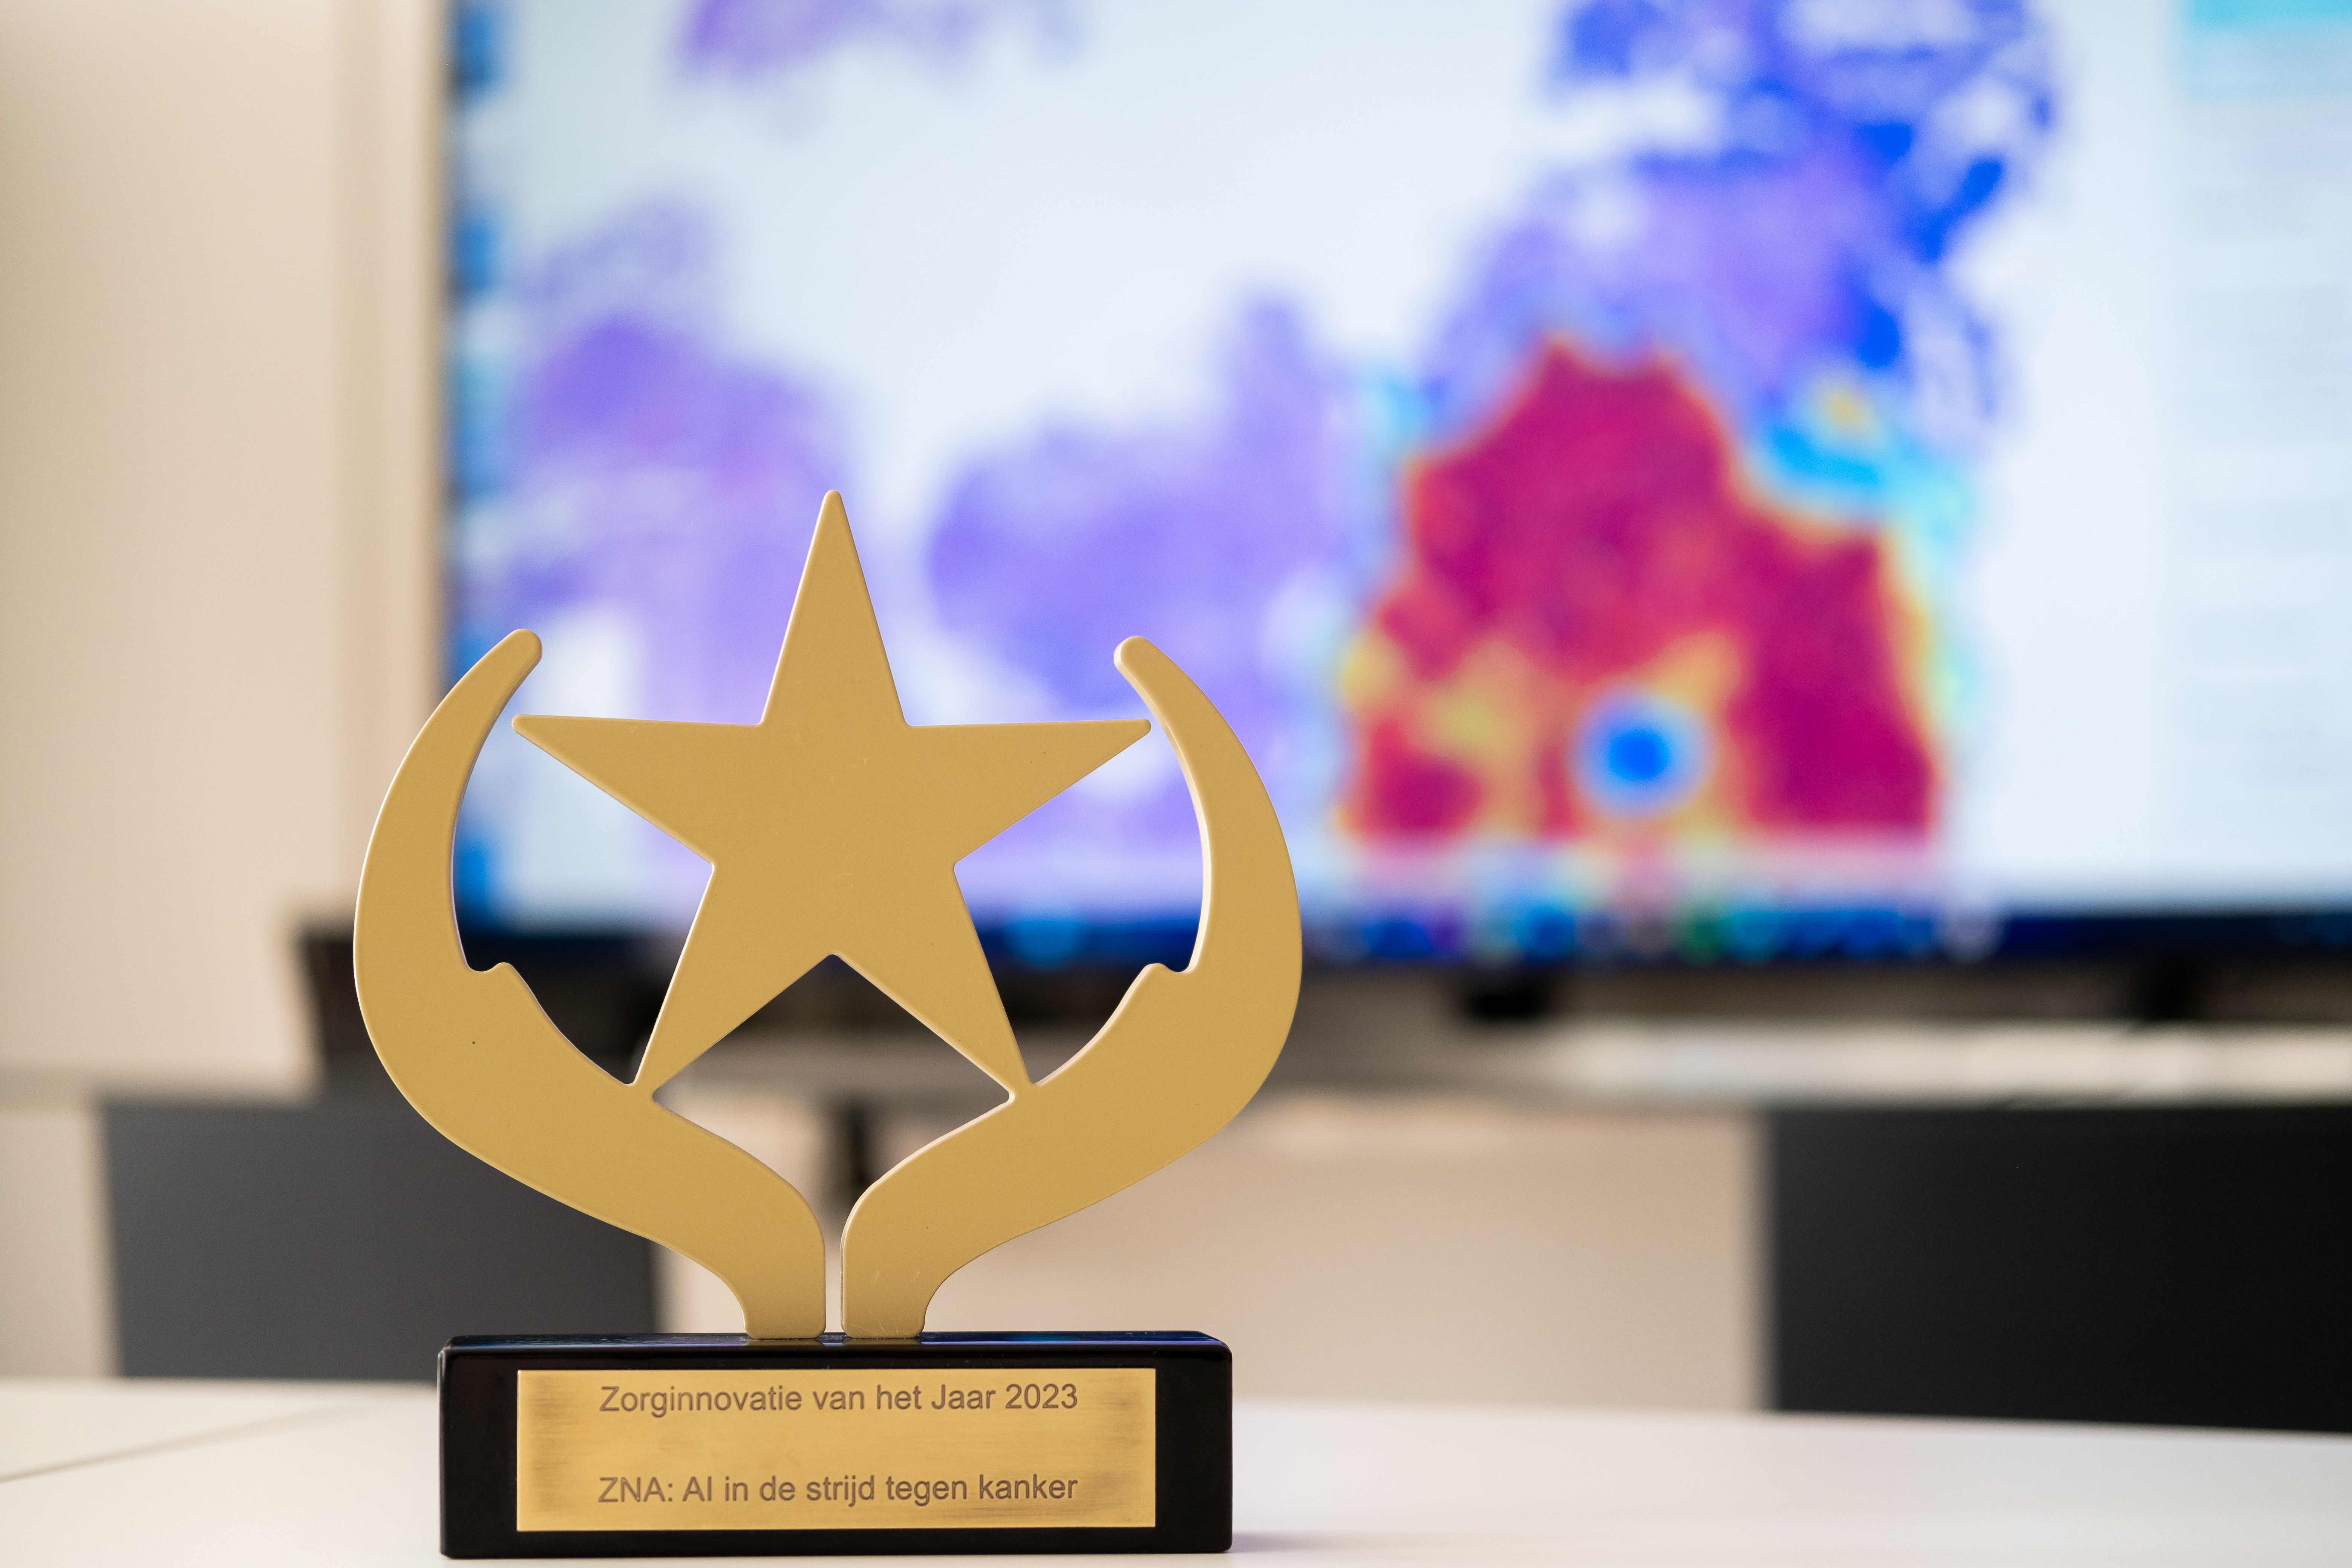 De Zorg Magazine Award voor Zorginnovatie van het jaar: de inzet van artificiële intelligentie in de strijd tegen kanker in het lab anatome pathologie van ZAS (Ziekenhuis aan de Stroom) (foto: ZNA)